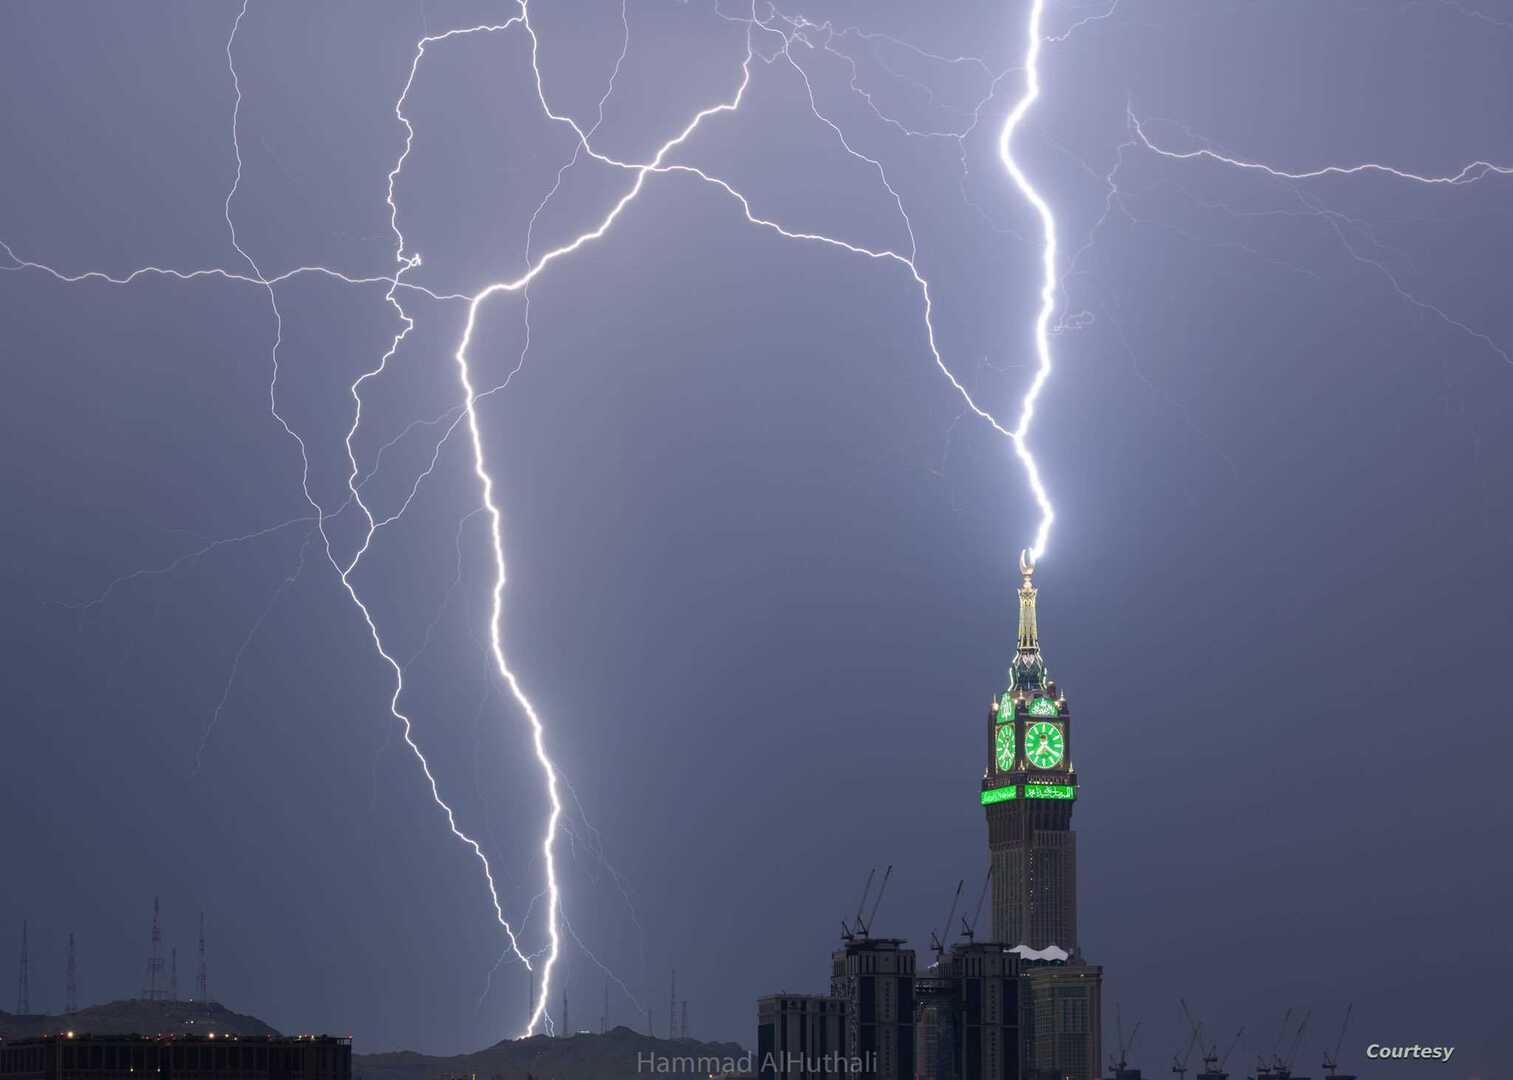 خبير مناخ سعودي يكشف 7 أسباب للظواهر الجوية العنيفة في مكة الكرمة (فيديو)